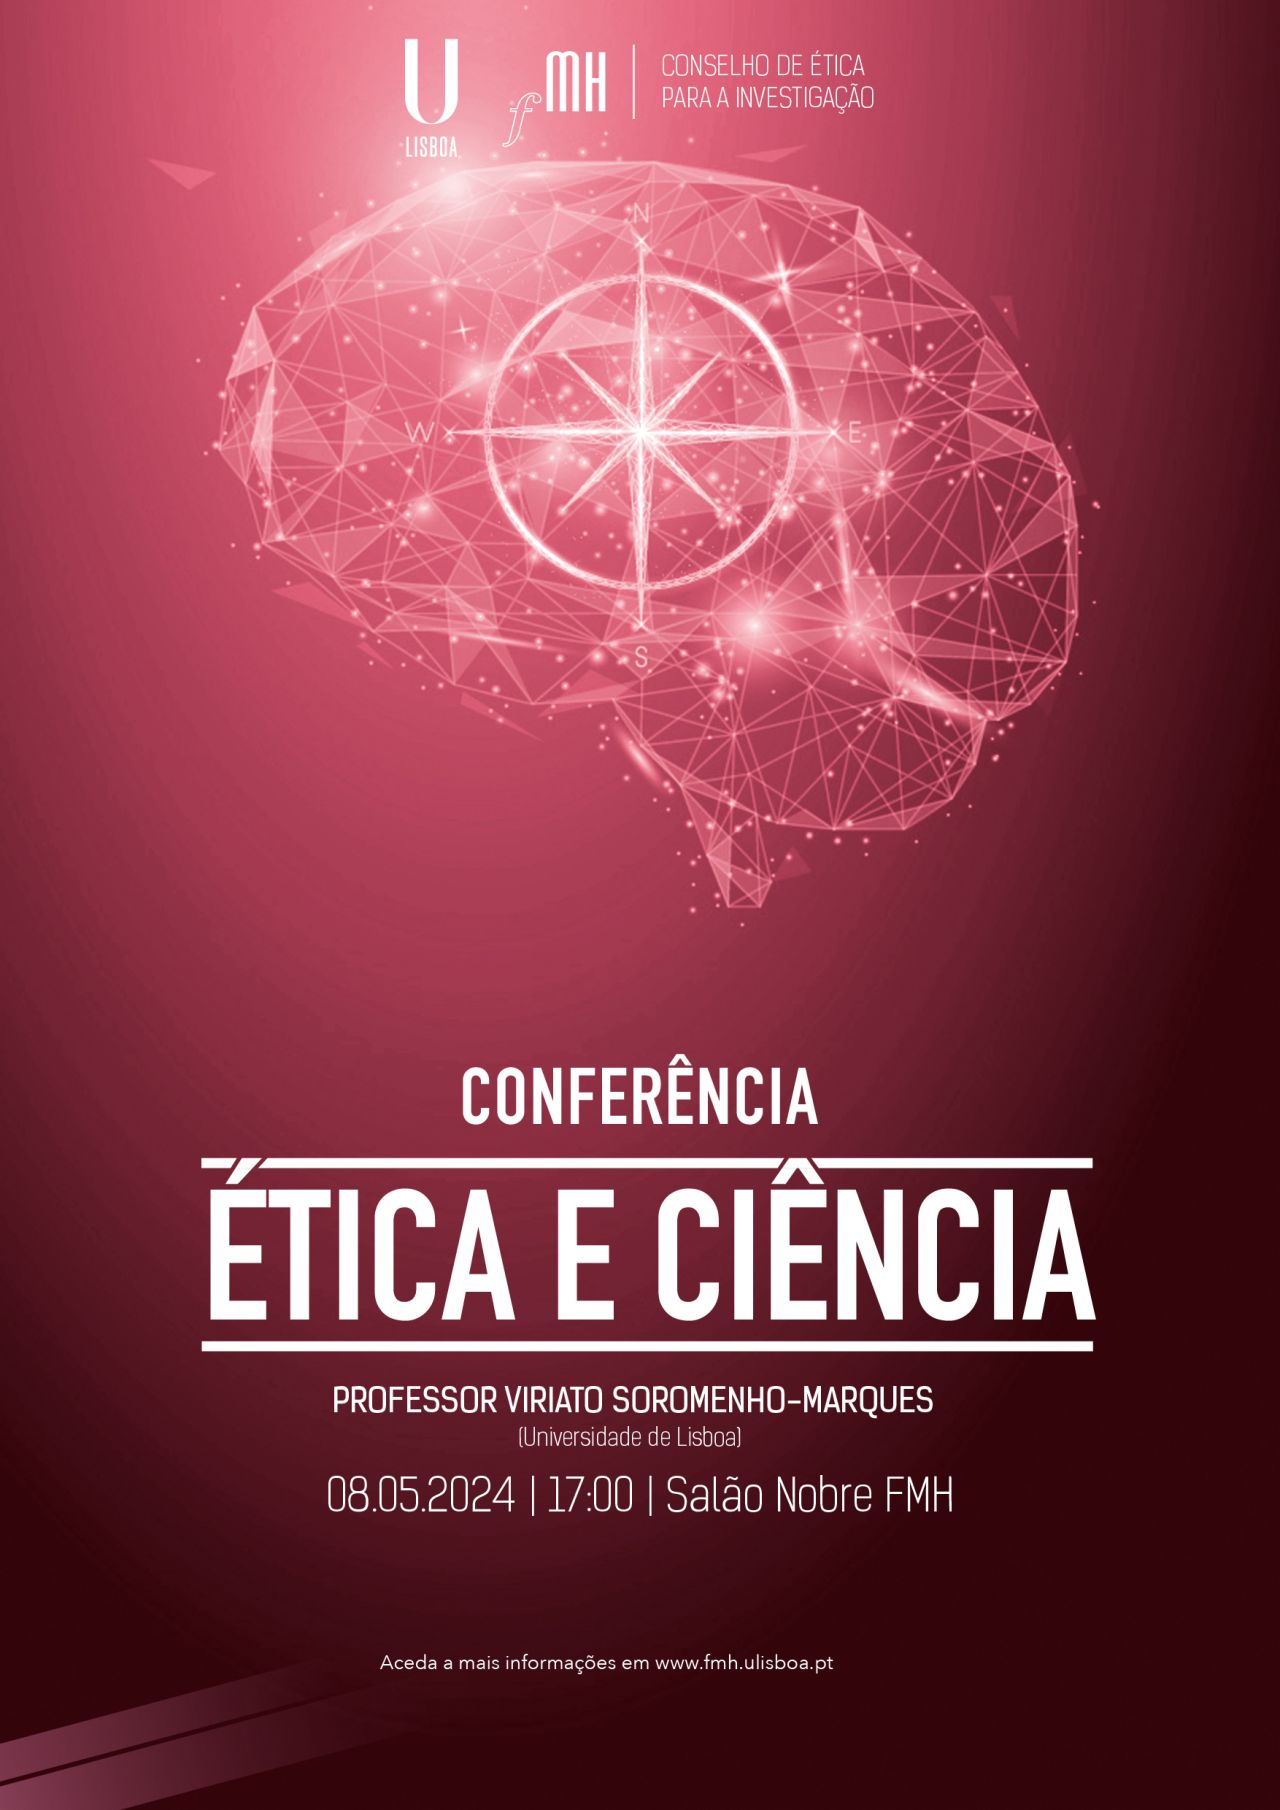 Conferência - “Ética e Ciência"